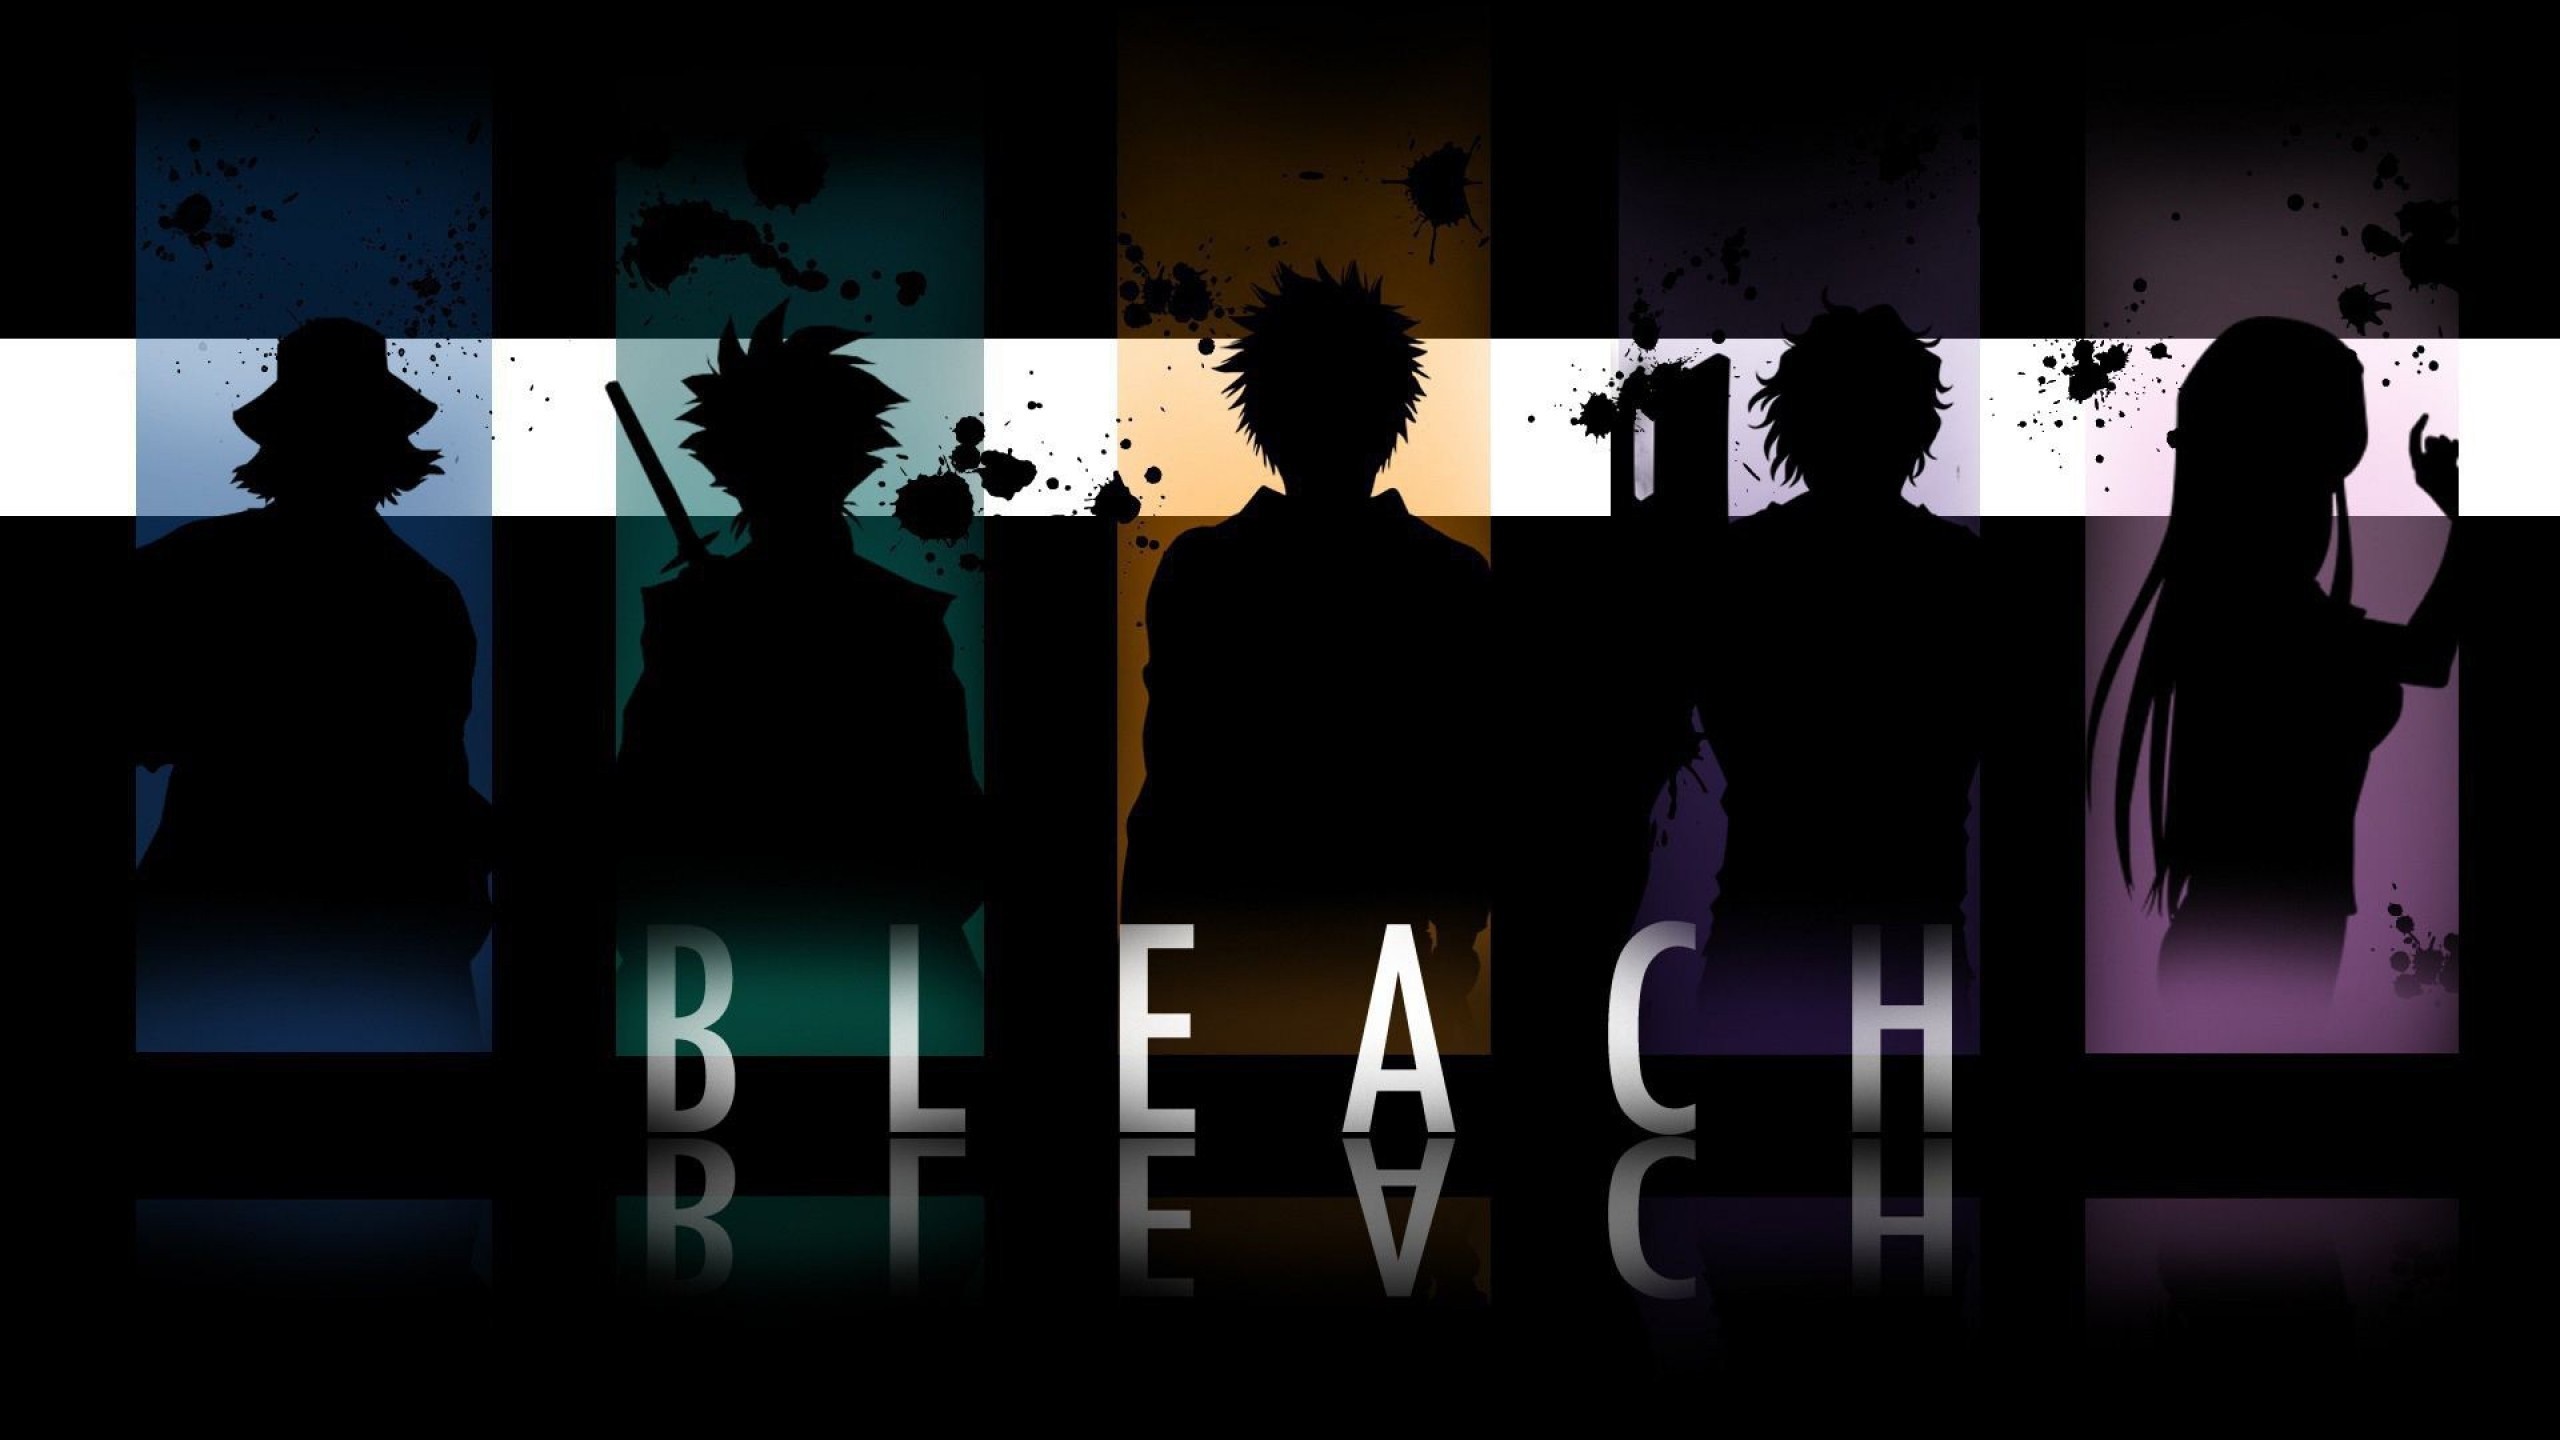 Illustration anime silhouette text paint splatter bleach brand darkness screenshot puter wallpaper font album cover